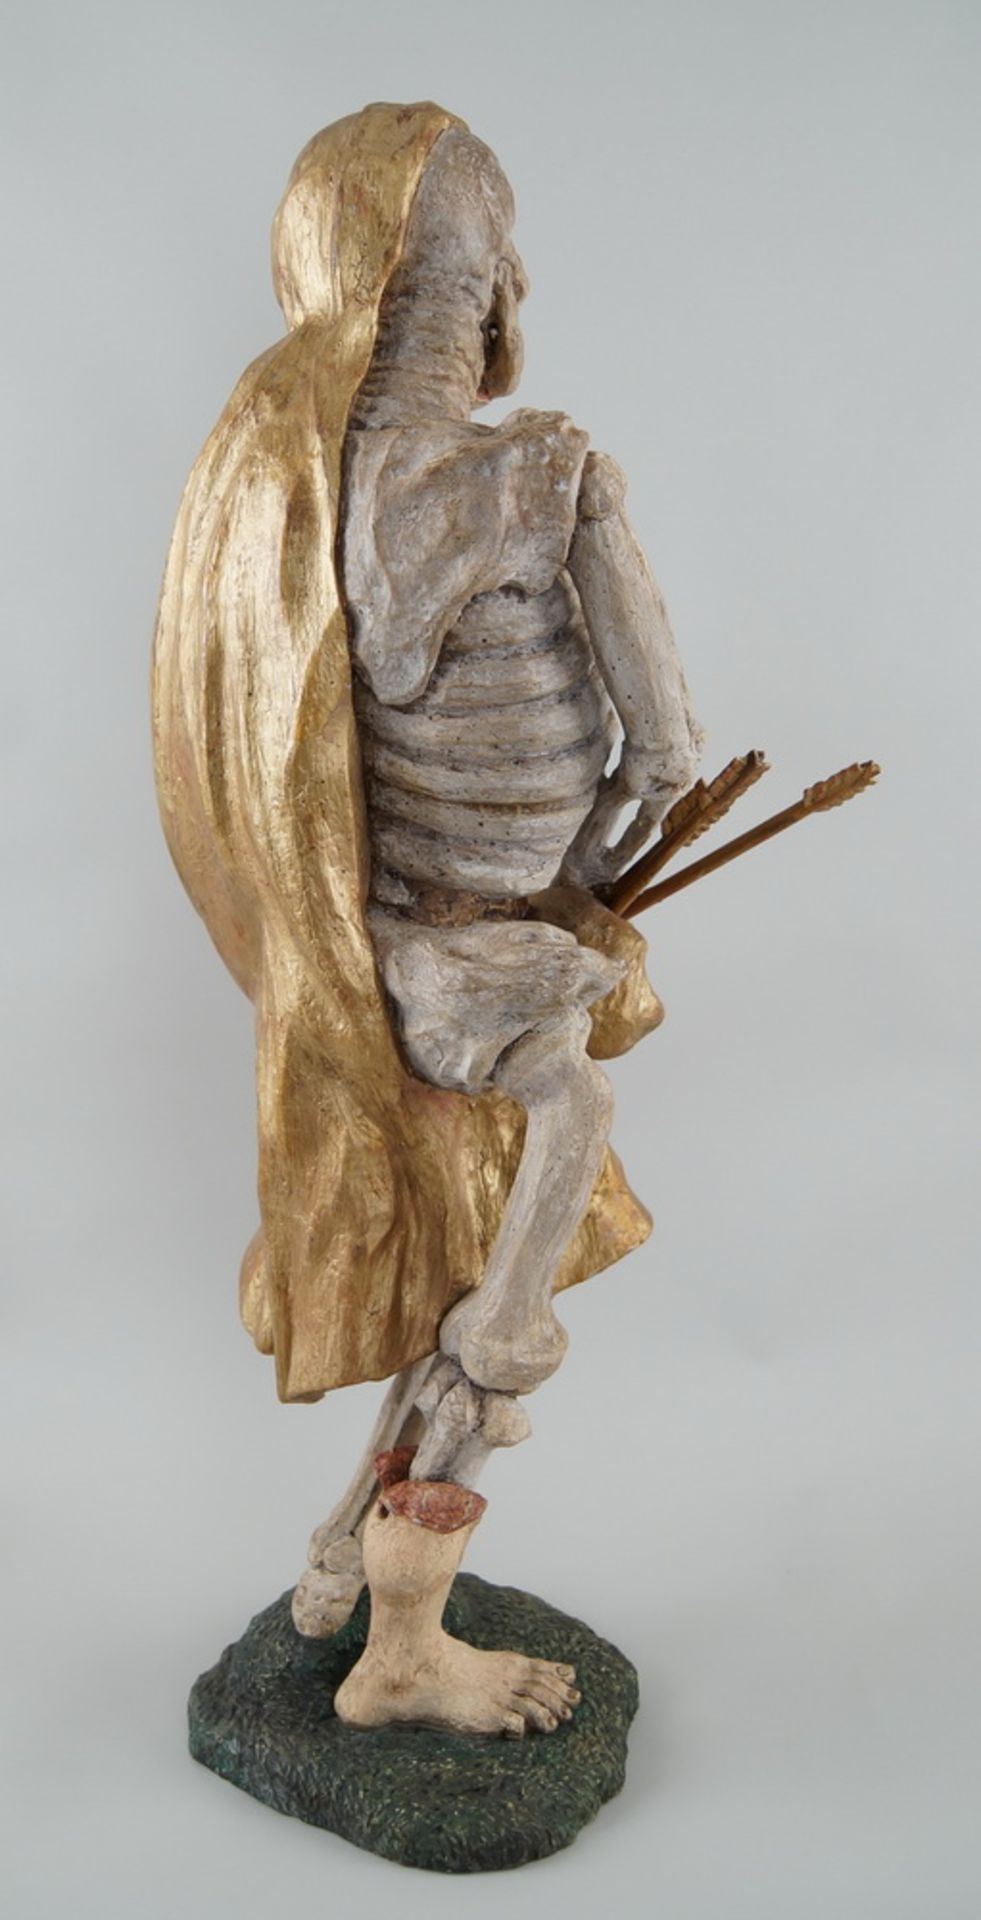 Memento Mori Skulptur mit Pfeil und Bogen, stehende, skelettierte Figur in Holz geschnitzt - Bild 3 aus 10